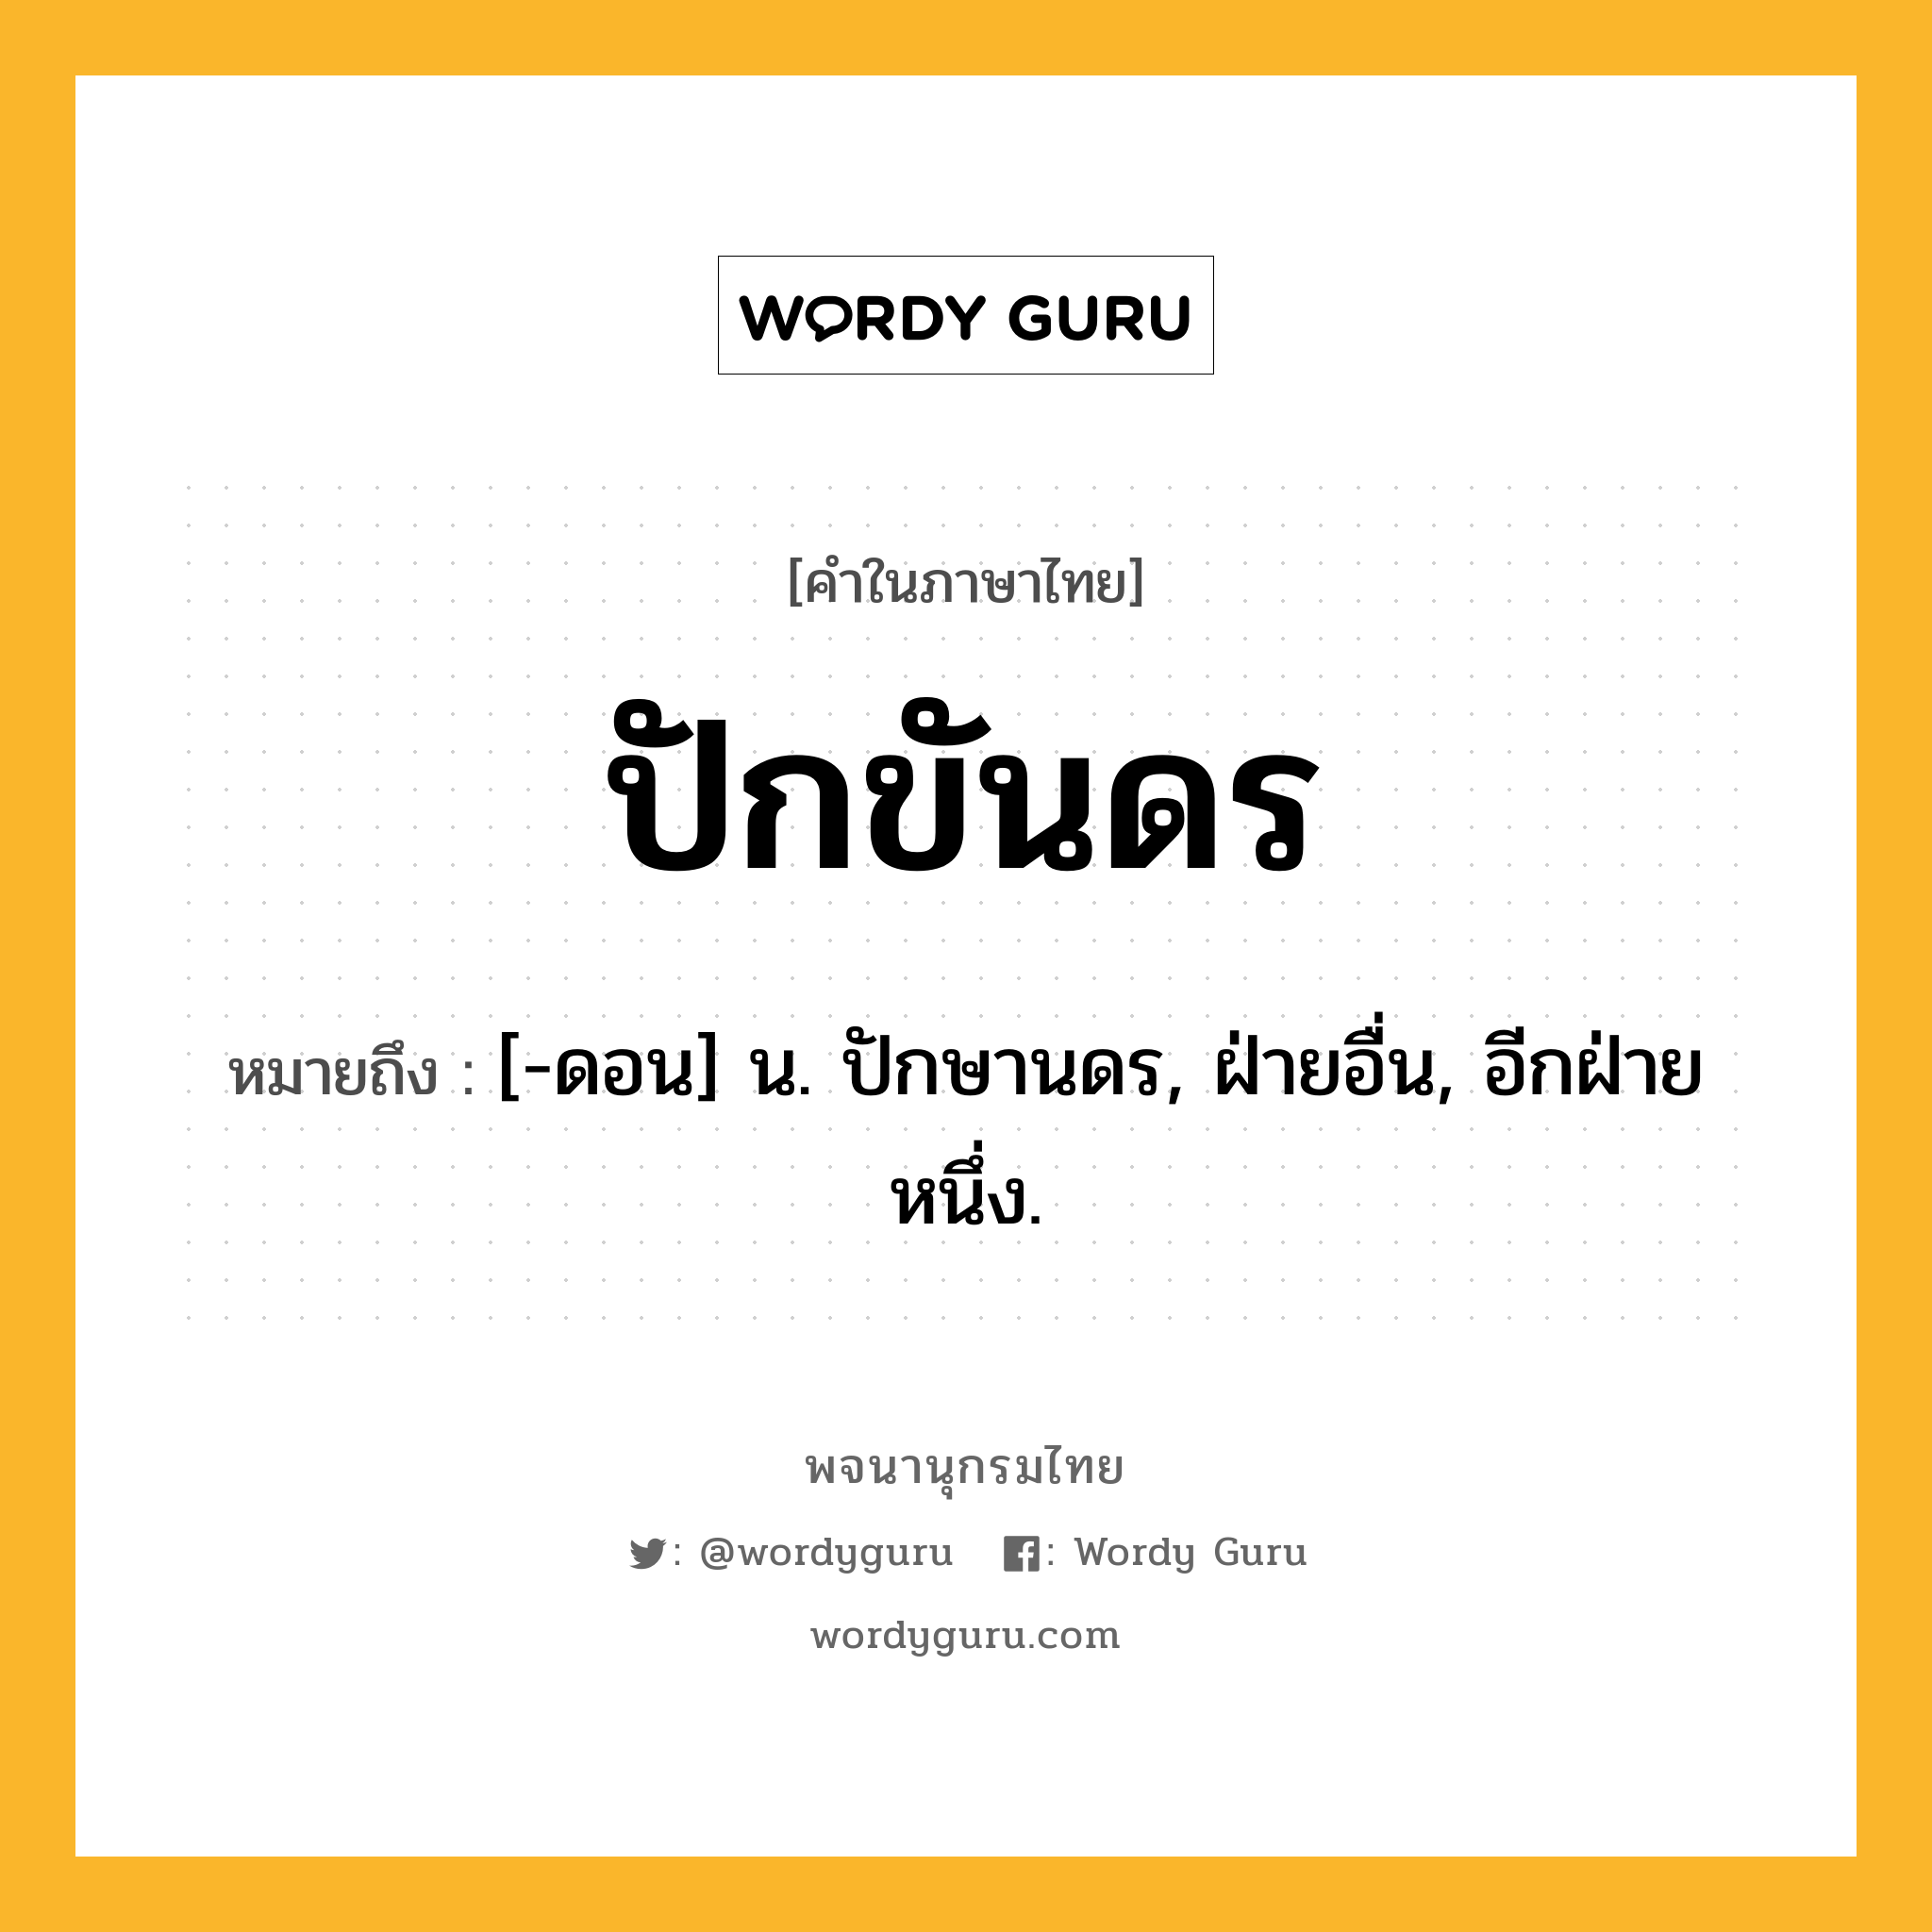 ปักขันดร หมายถึงอะไร?, คำในภาษาไทย ปักขันดร หมายถึง [-ดอน] น. ปักษานดร, ฝ่ายอื่น, อีกฝ่ายหนึ่ง.